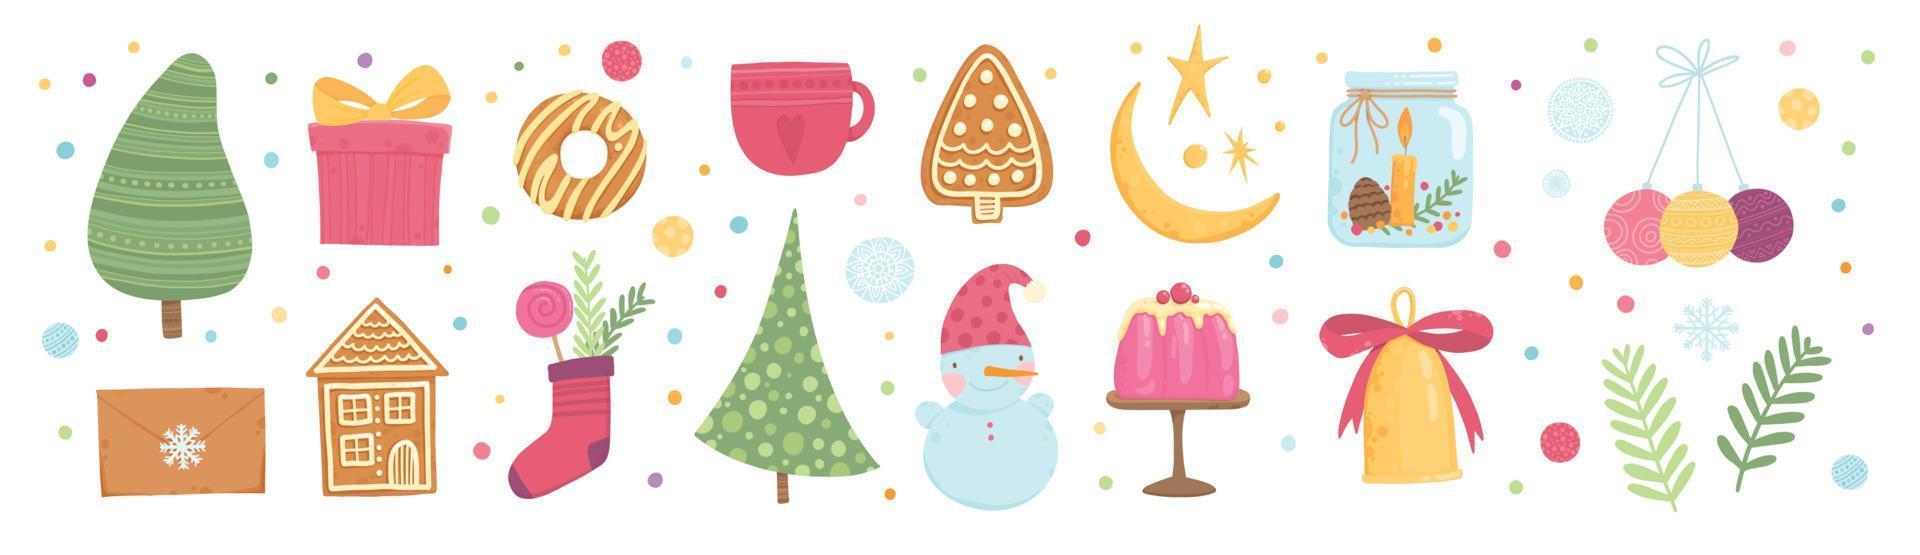 colección de hermosos adornos y adornos para árbol de navidad. conjunto de adornos navideños, animales, santa, muñeco de nieve, campana de oro. ilustración vectorial de color en estilo de dibujos animados plana vector